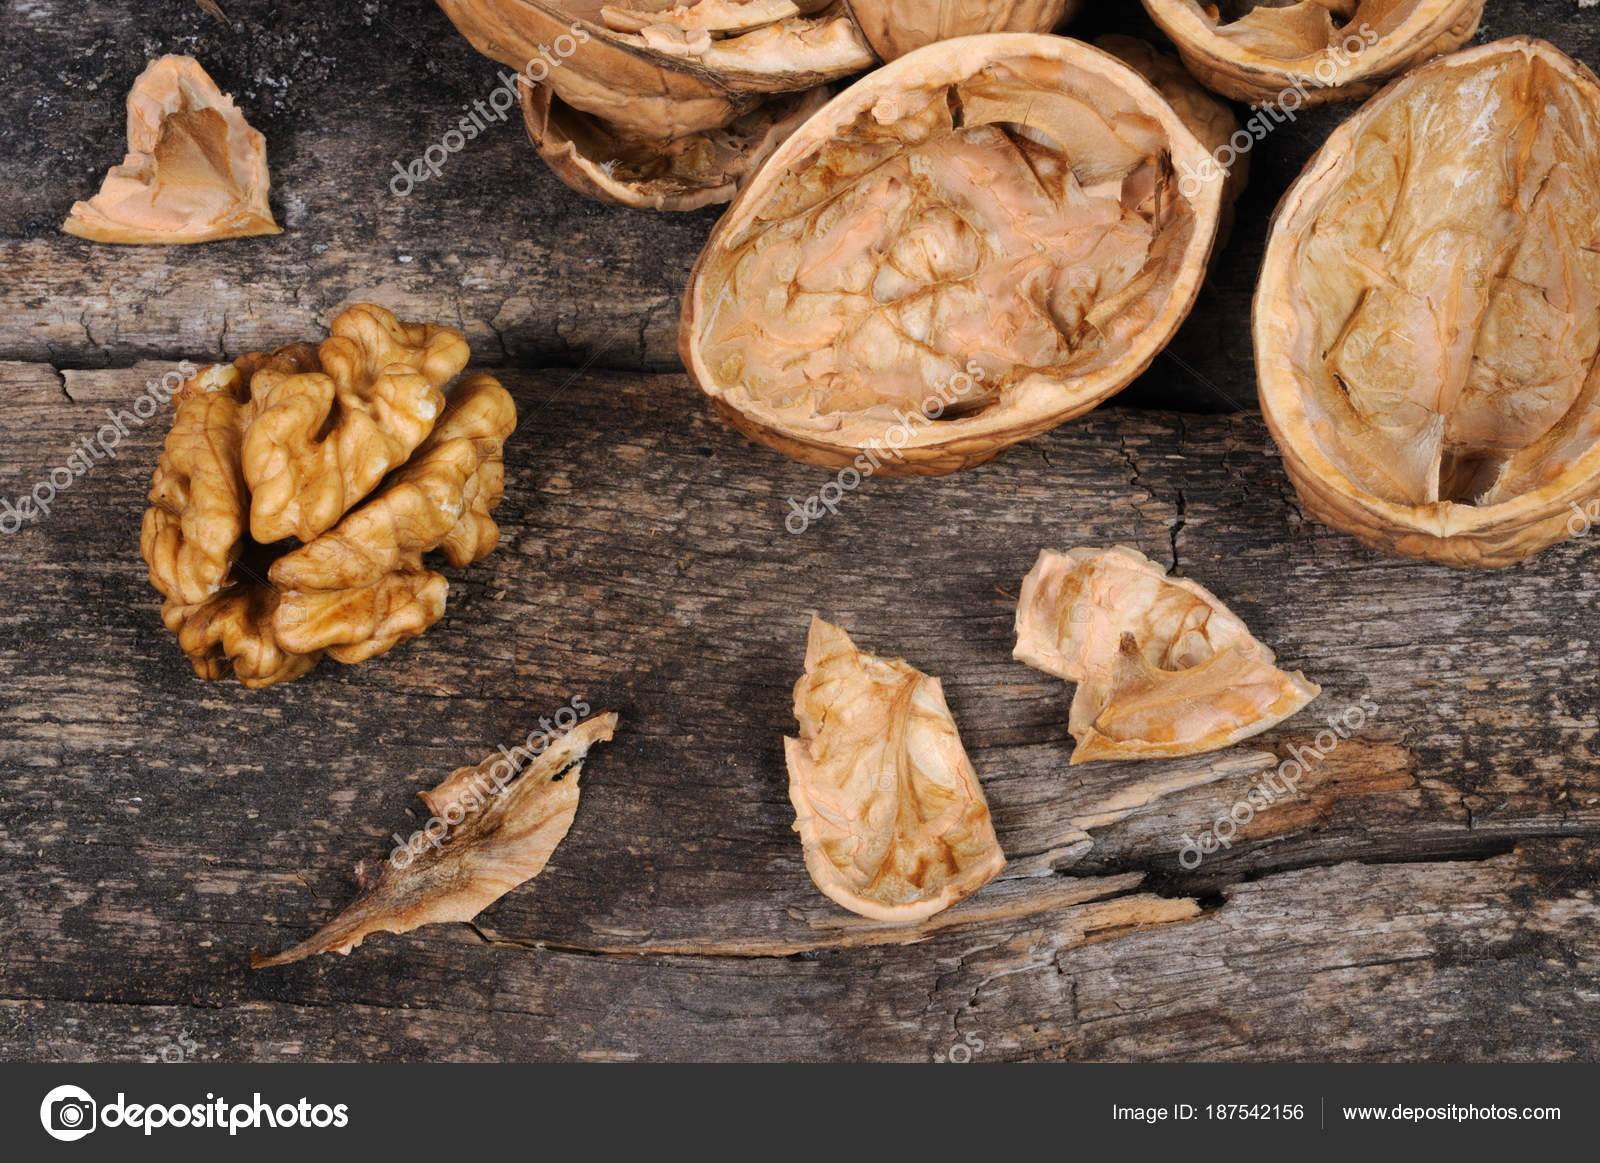 Виды орехов — самый большой список названий с описанием полезных свойств, фотографии, видео, отзывы и рекомендации